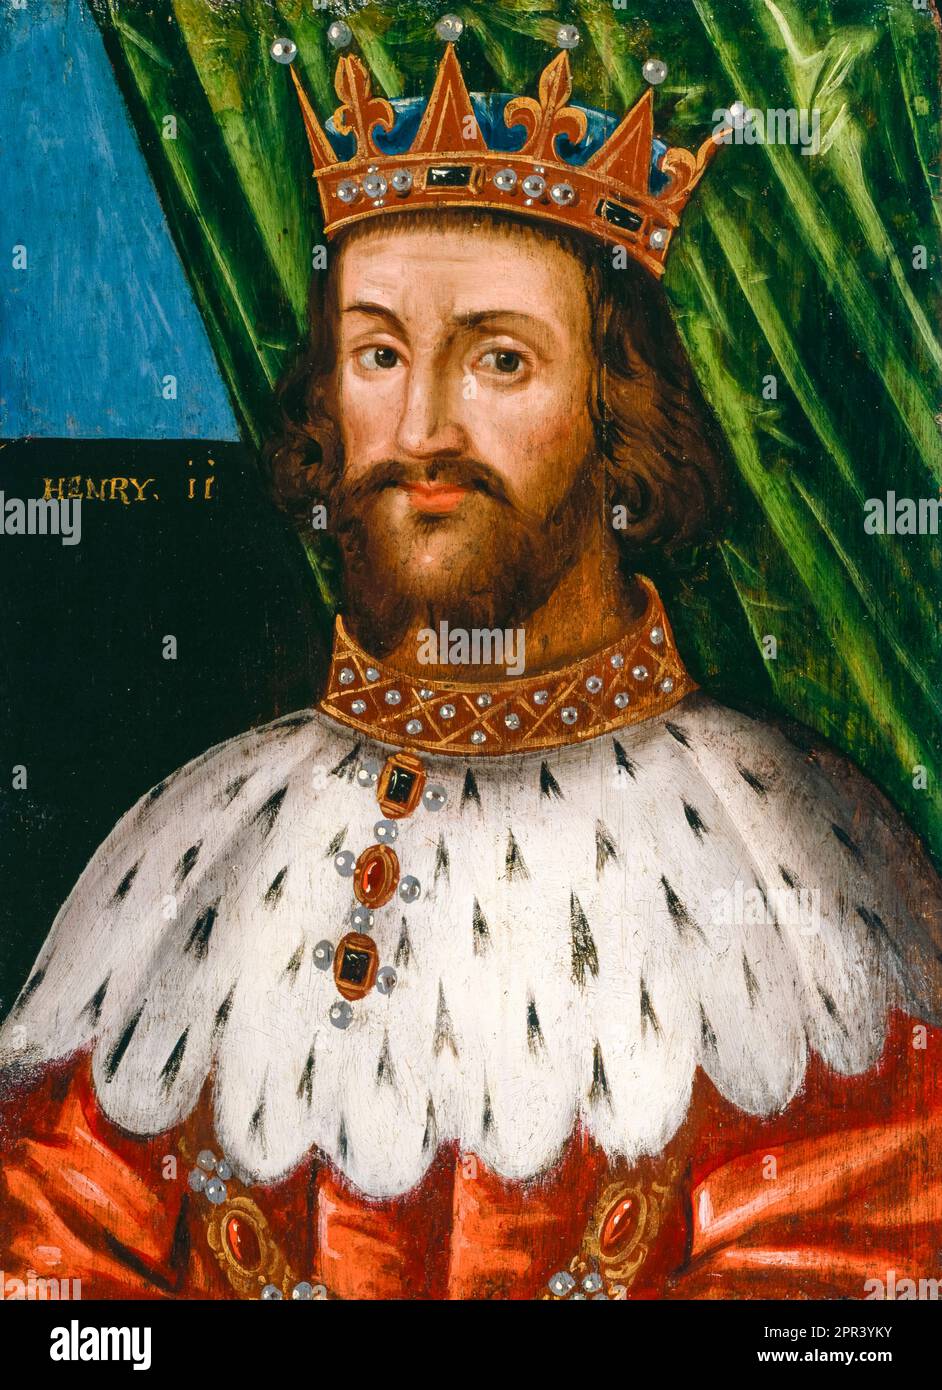 Henry II d'Angleterre (1133-1189), roi d'Angleterre (1154-1189), portrait peint à l'huile sur panneau, avant 1626 Banque D'Images